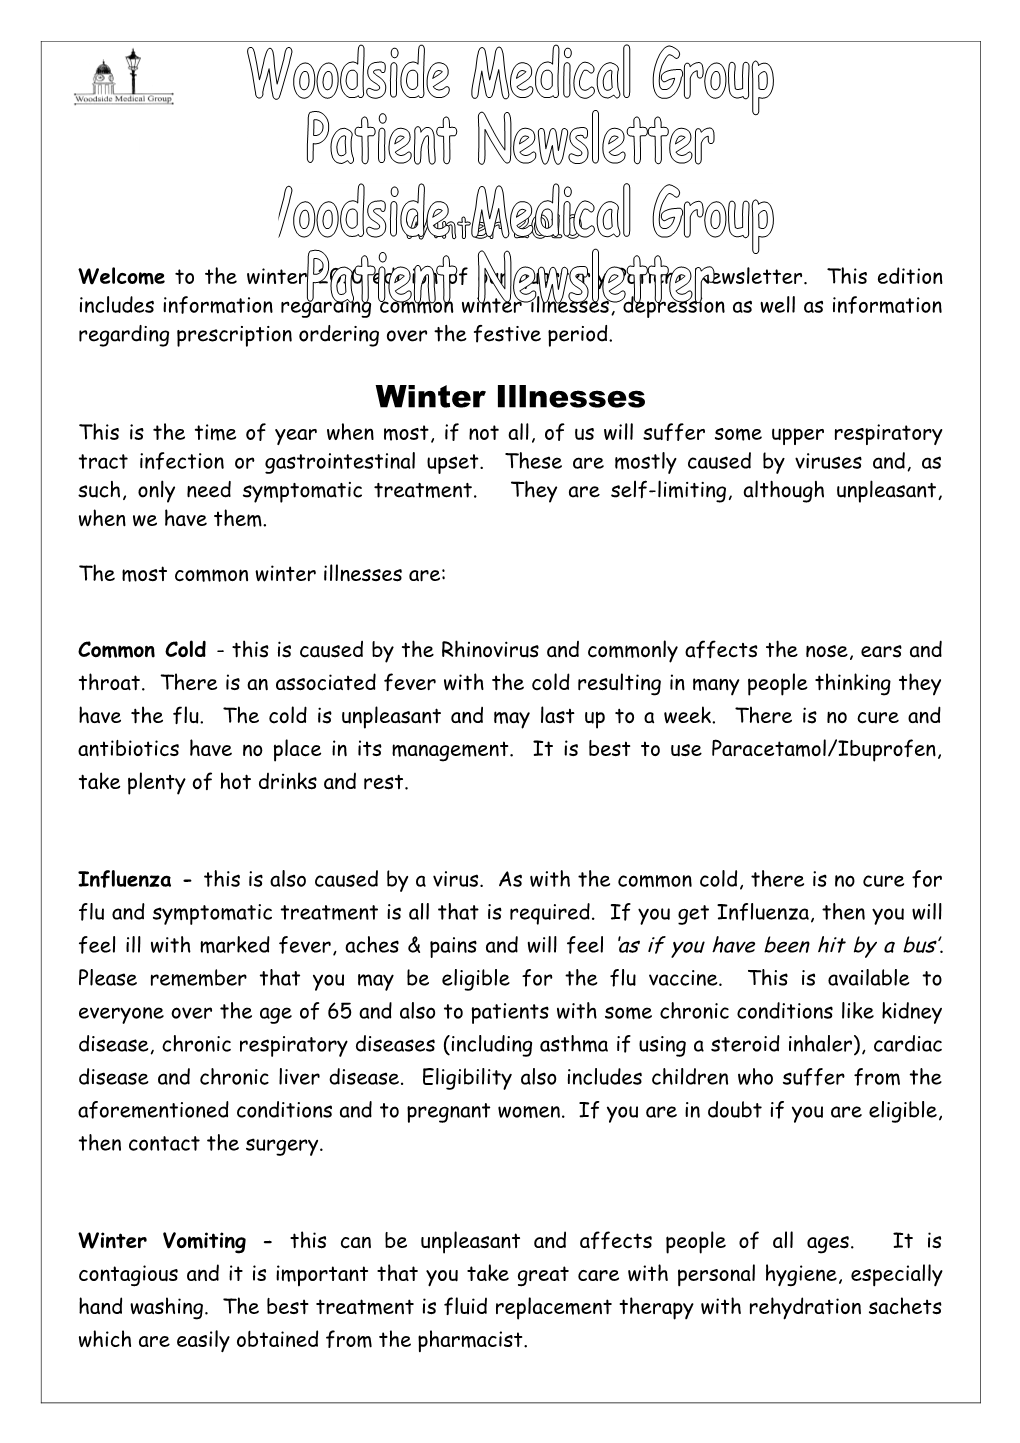 Winter Illnesses